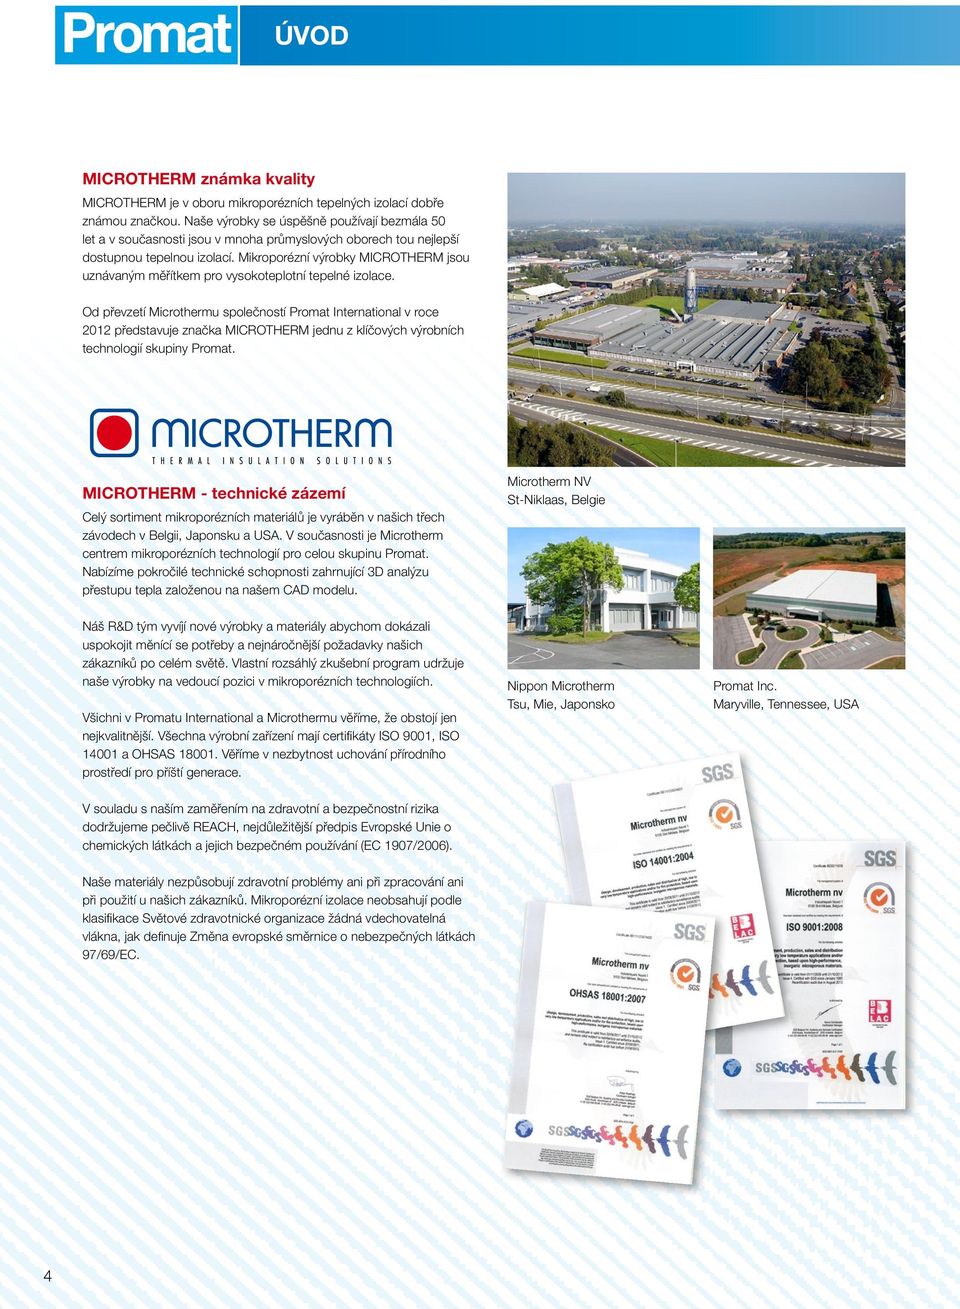 Mikroporézní výrobky MICROTHERM jsou uznávaným měřítkem pro vysokoteplotní tepelné izolace.